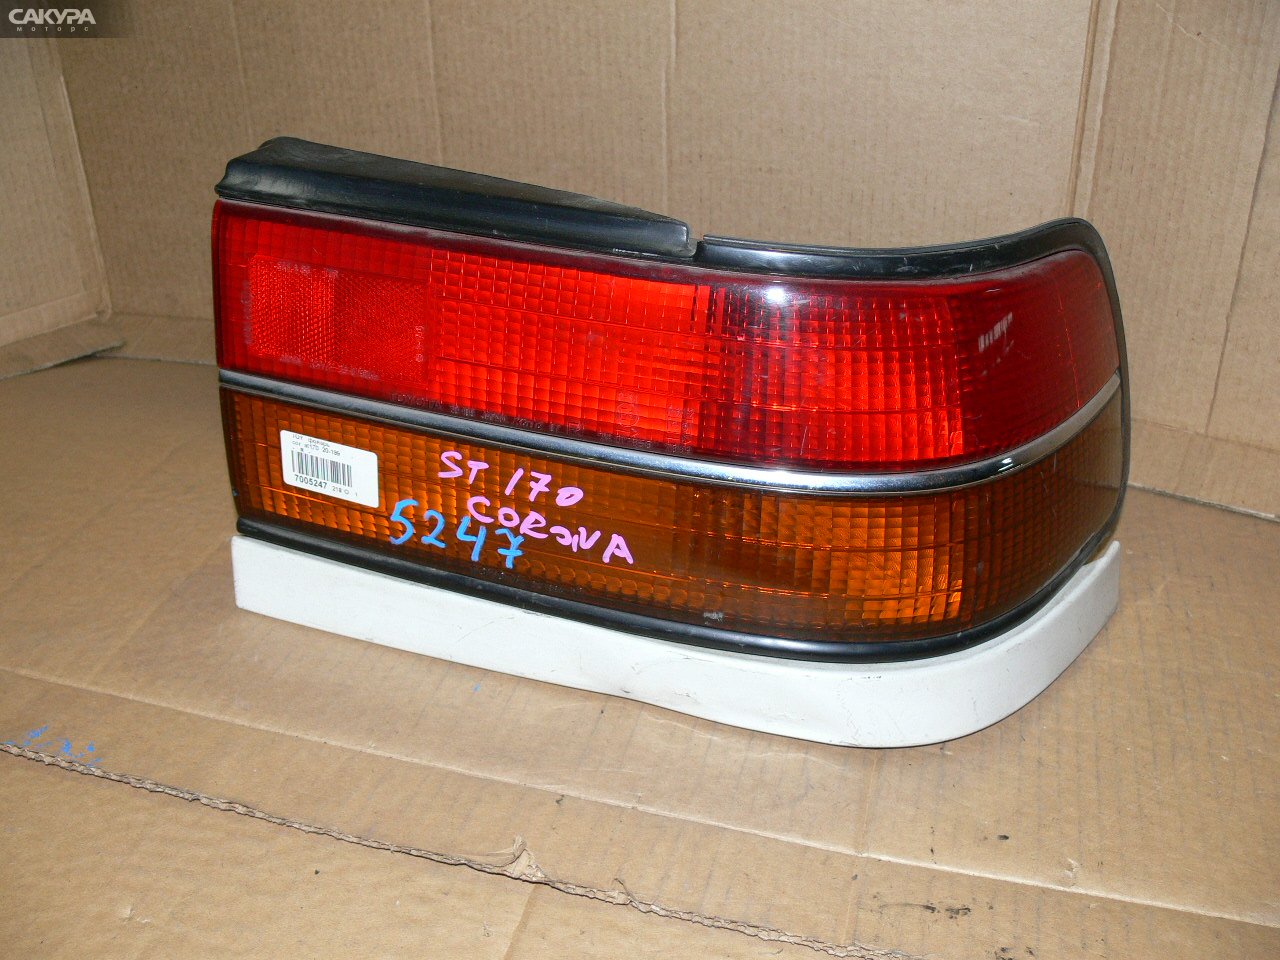 Фонарь стоп-сигнала правый Toyota Corona AT170 20-199: купить в Сакура Иркутск.